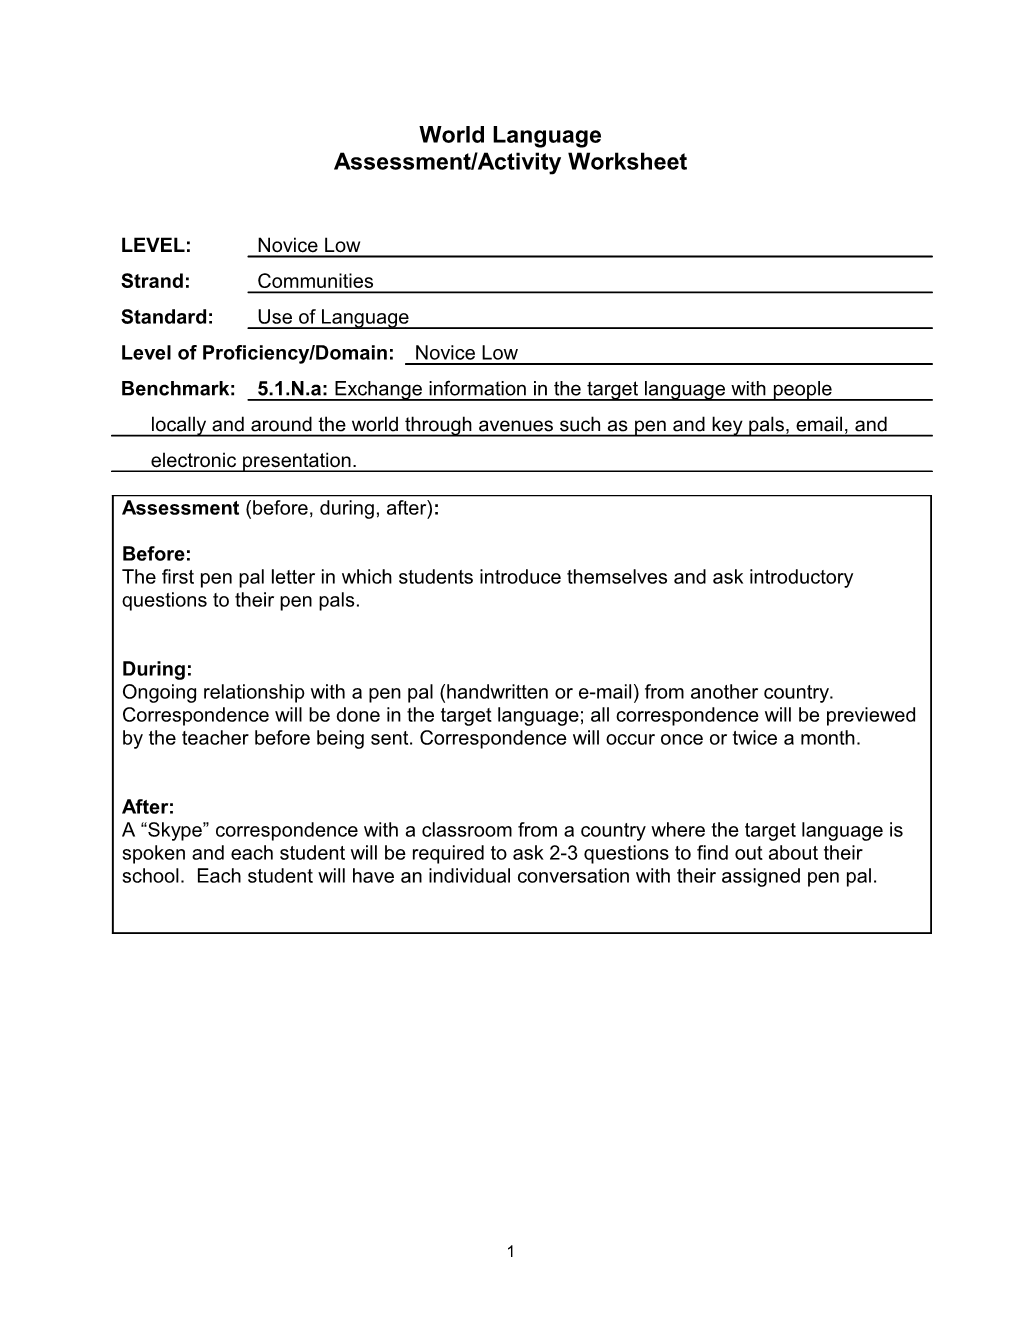 Assessment/Activity Worksheet